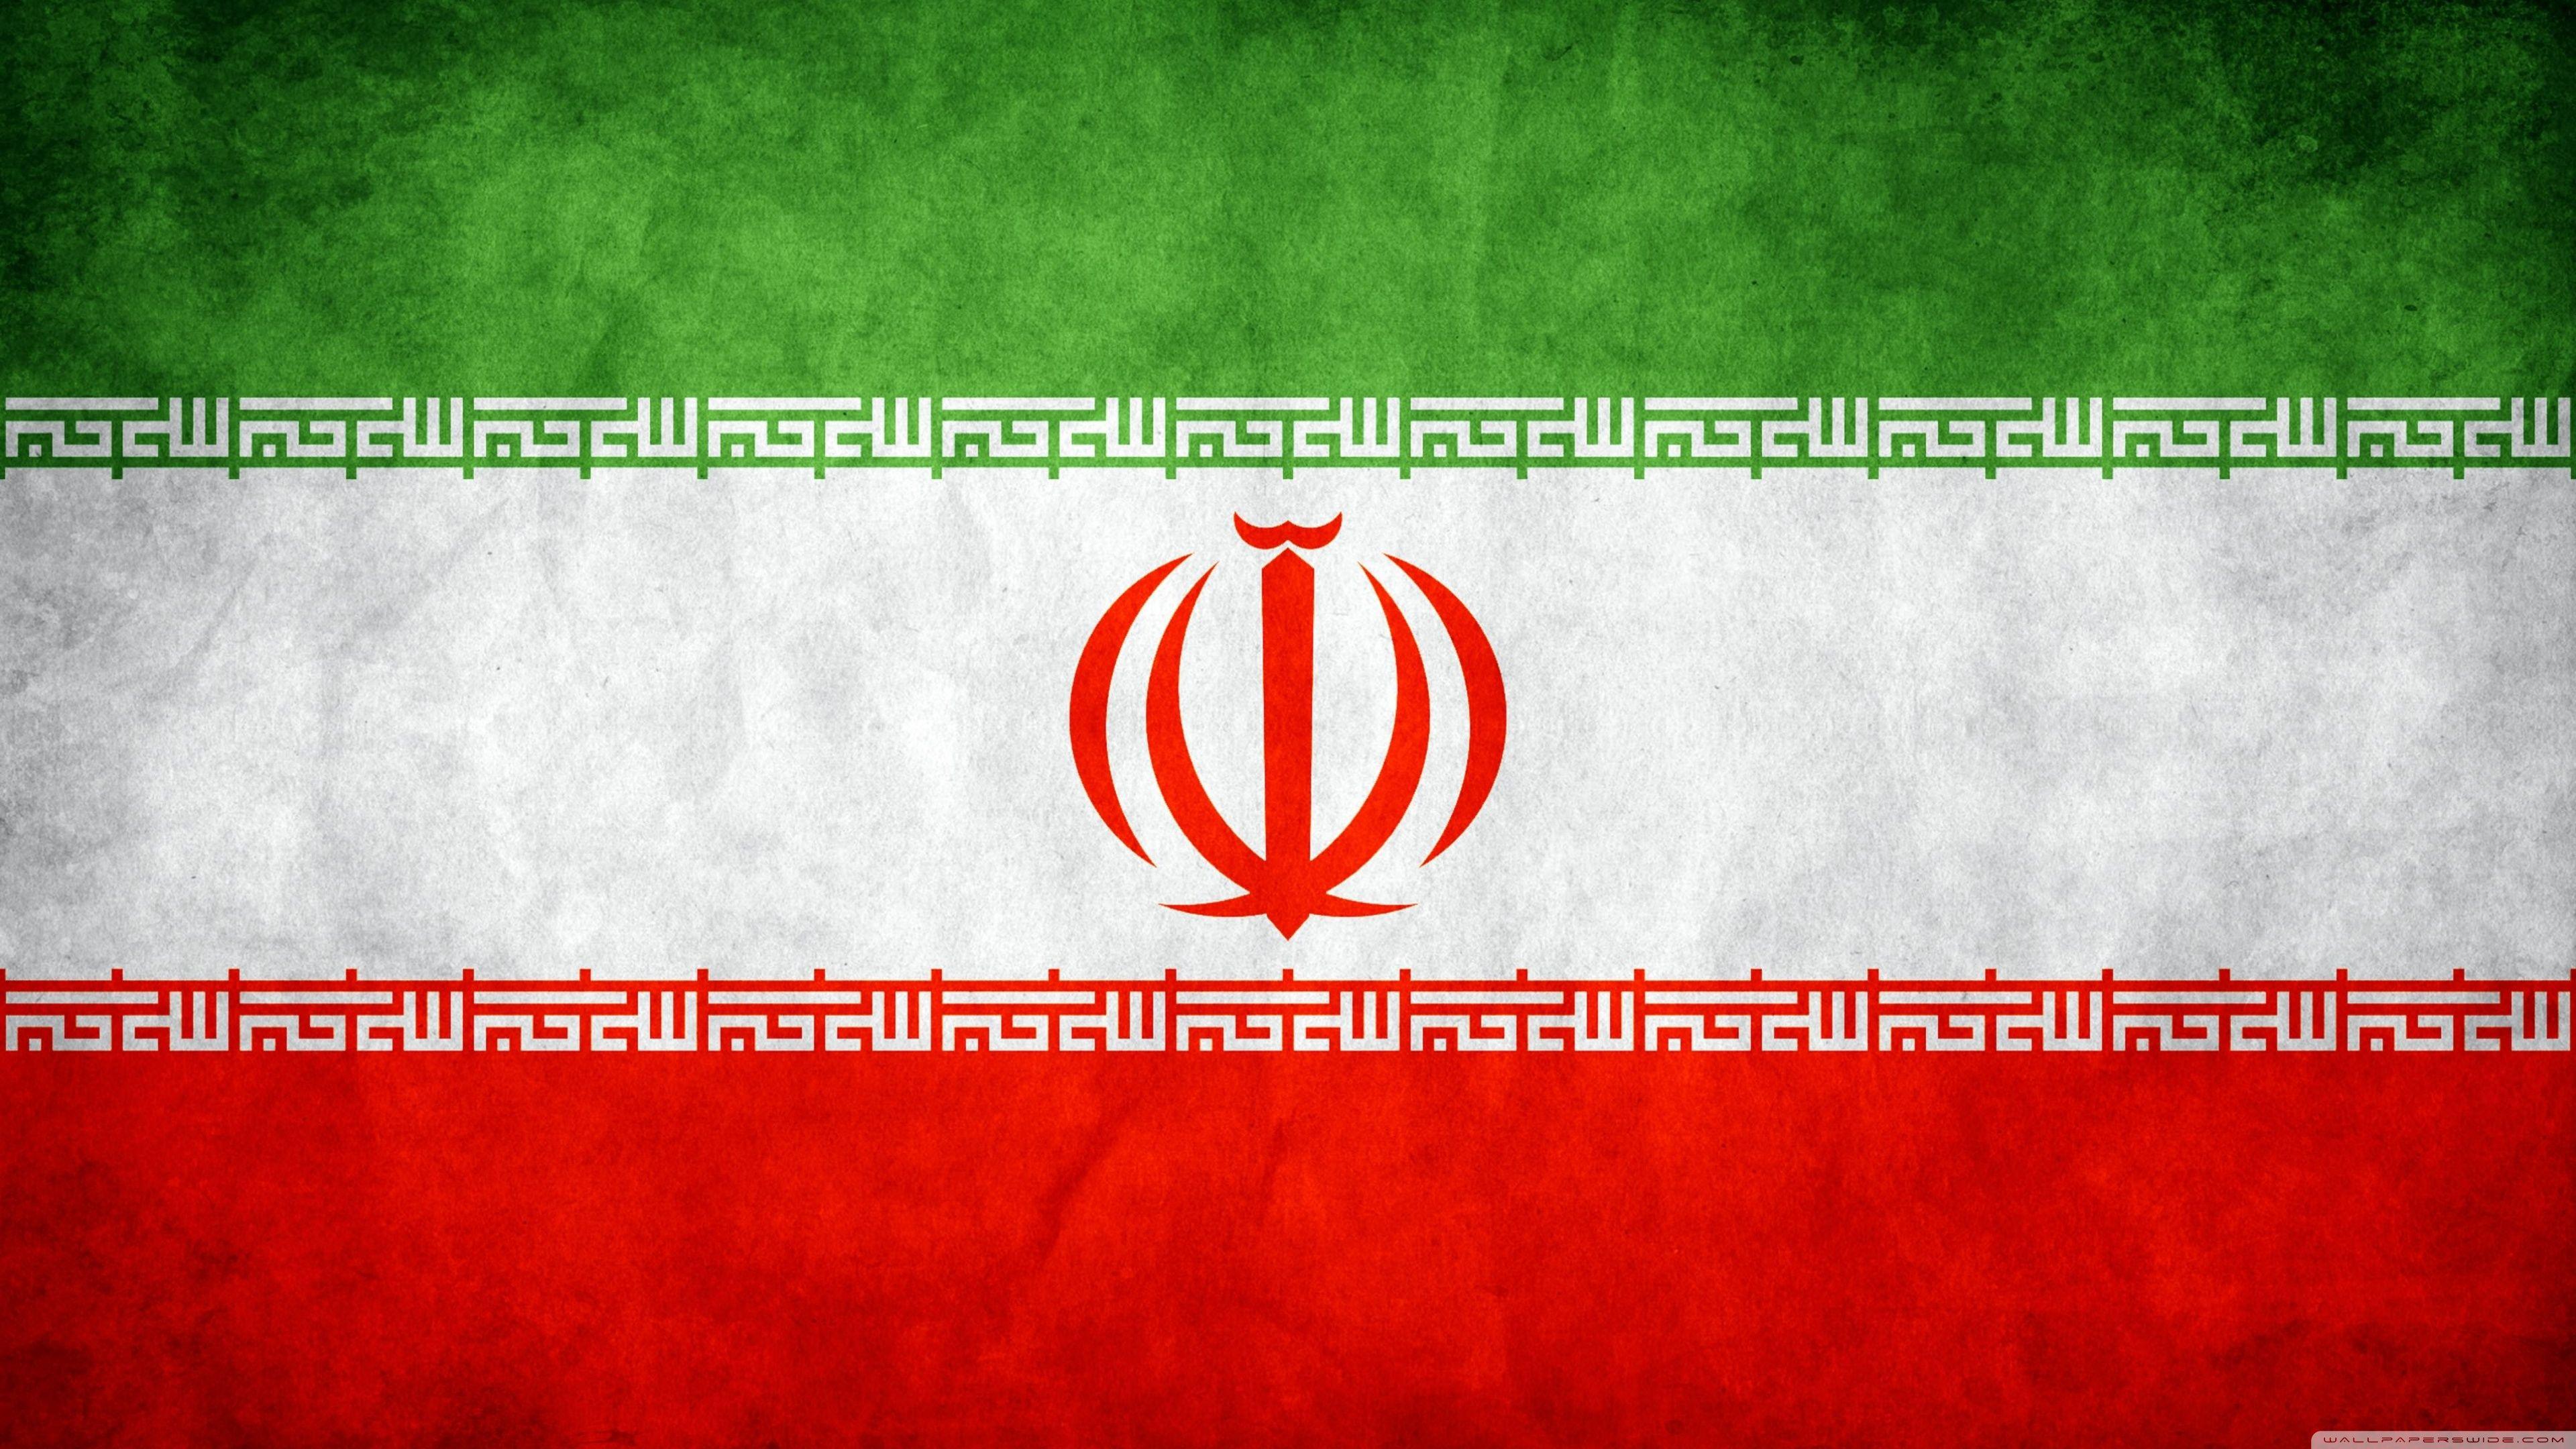 Flag of Iran HD desktop wallpaper, Widescreen, High Definition